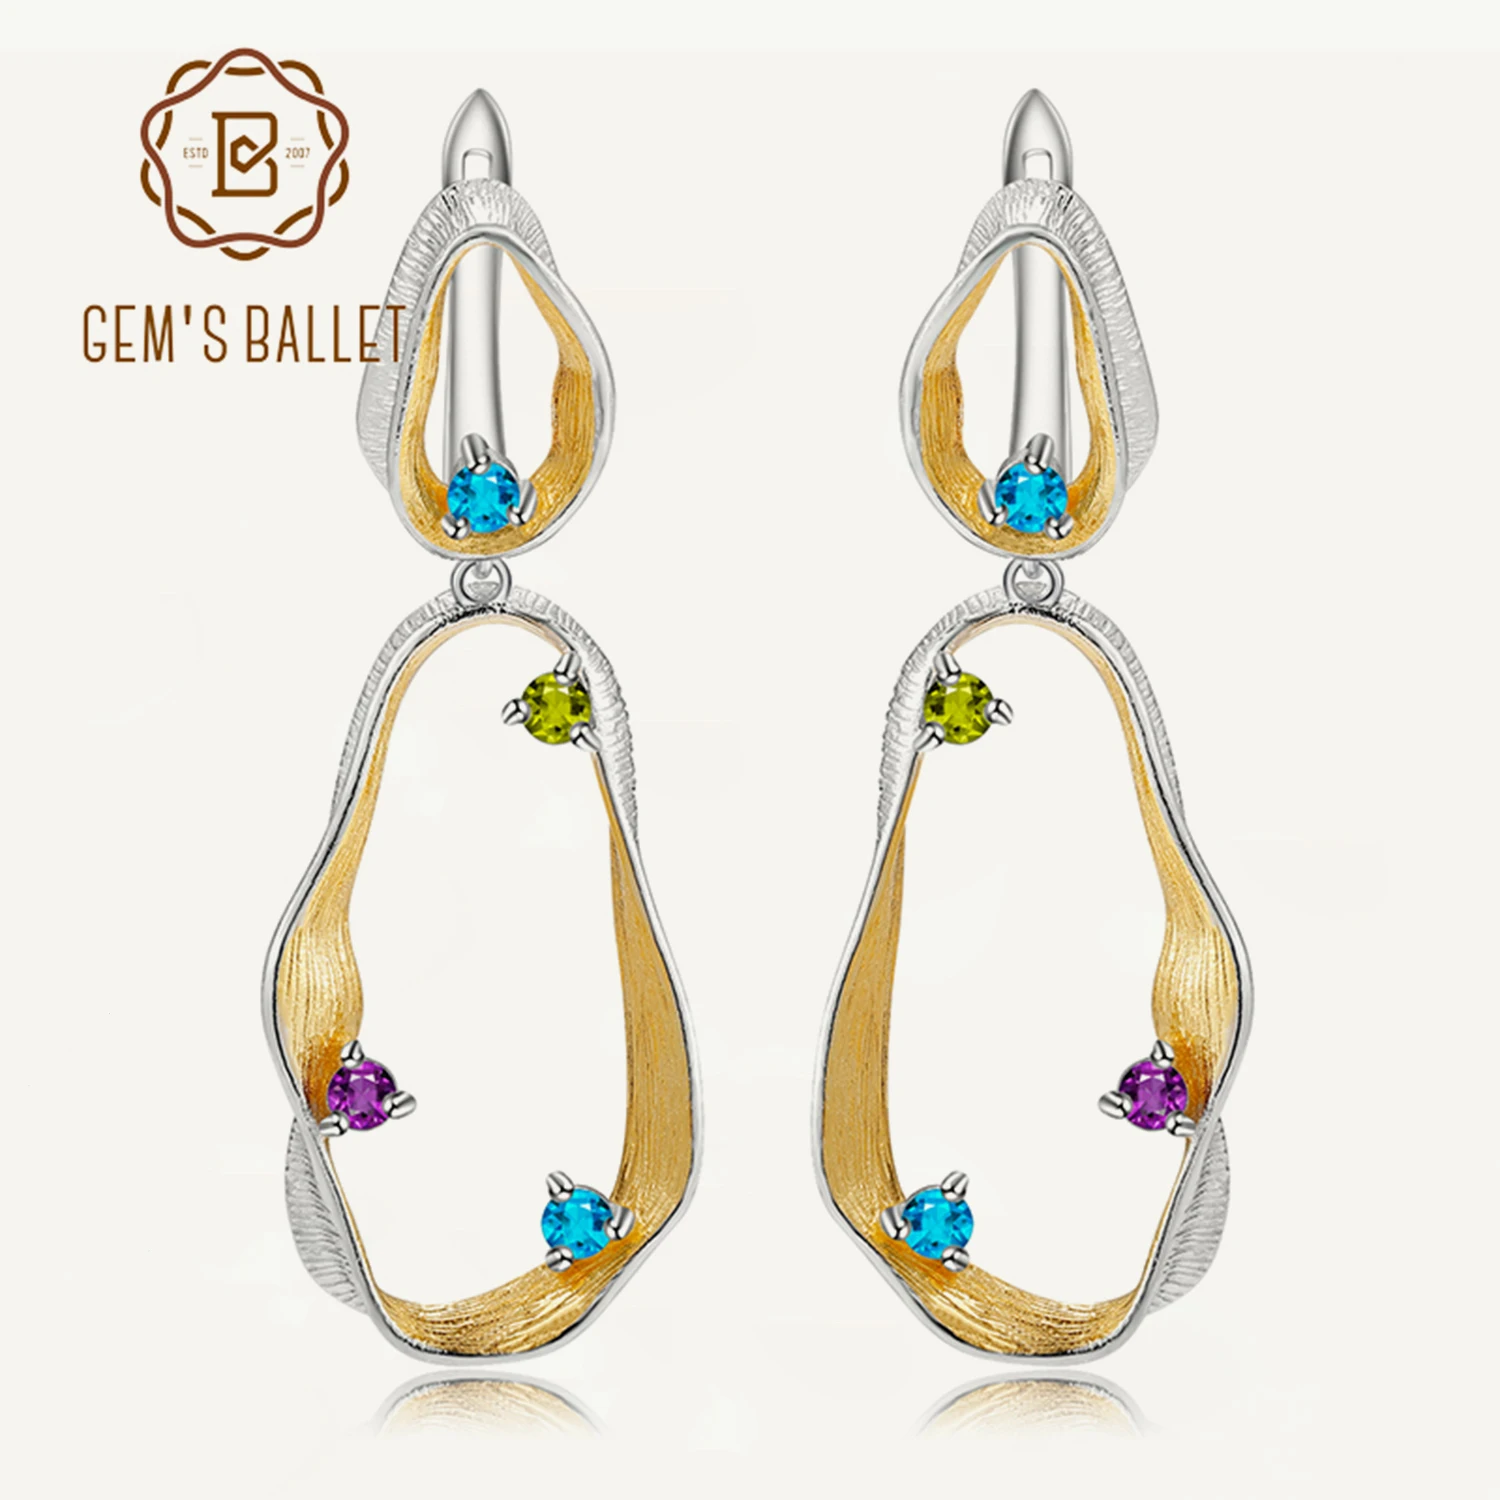 

GEM'S BALLET Natural Topaz Peridot Amethyst Gemstone Earrings 925 Sterling Silver Handmade Twist Drop Earrings for Women Jewelry